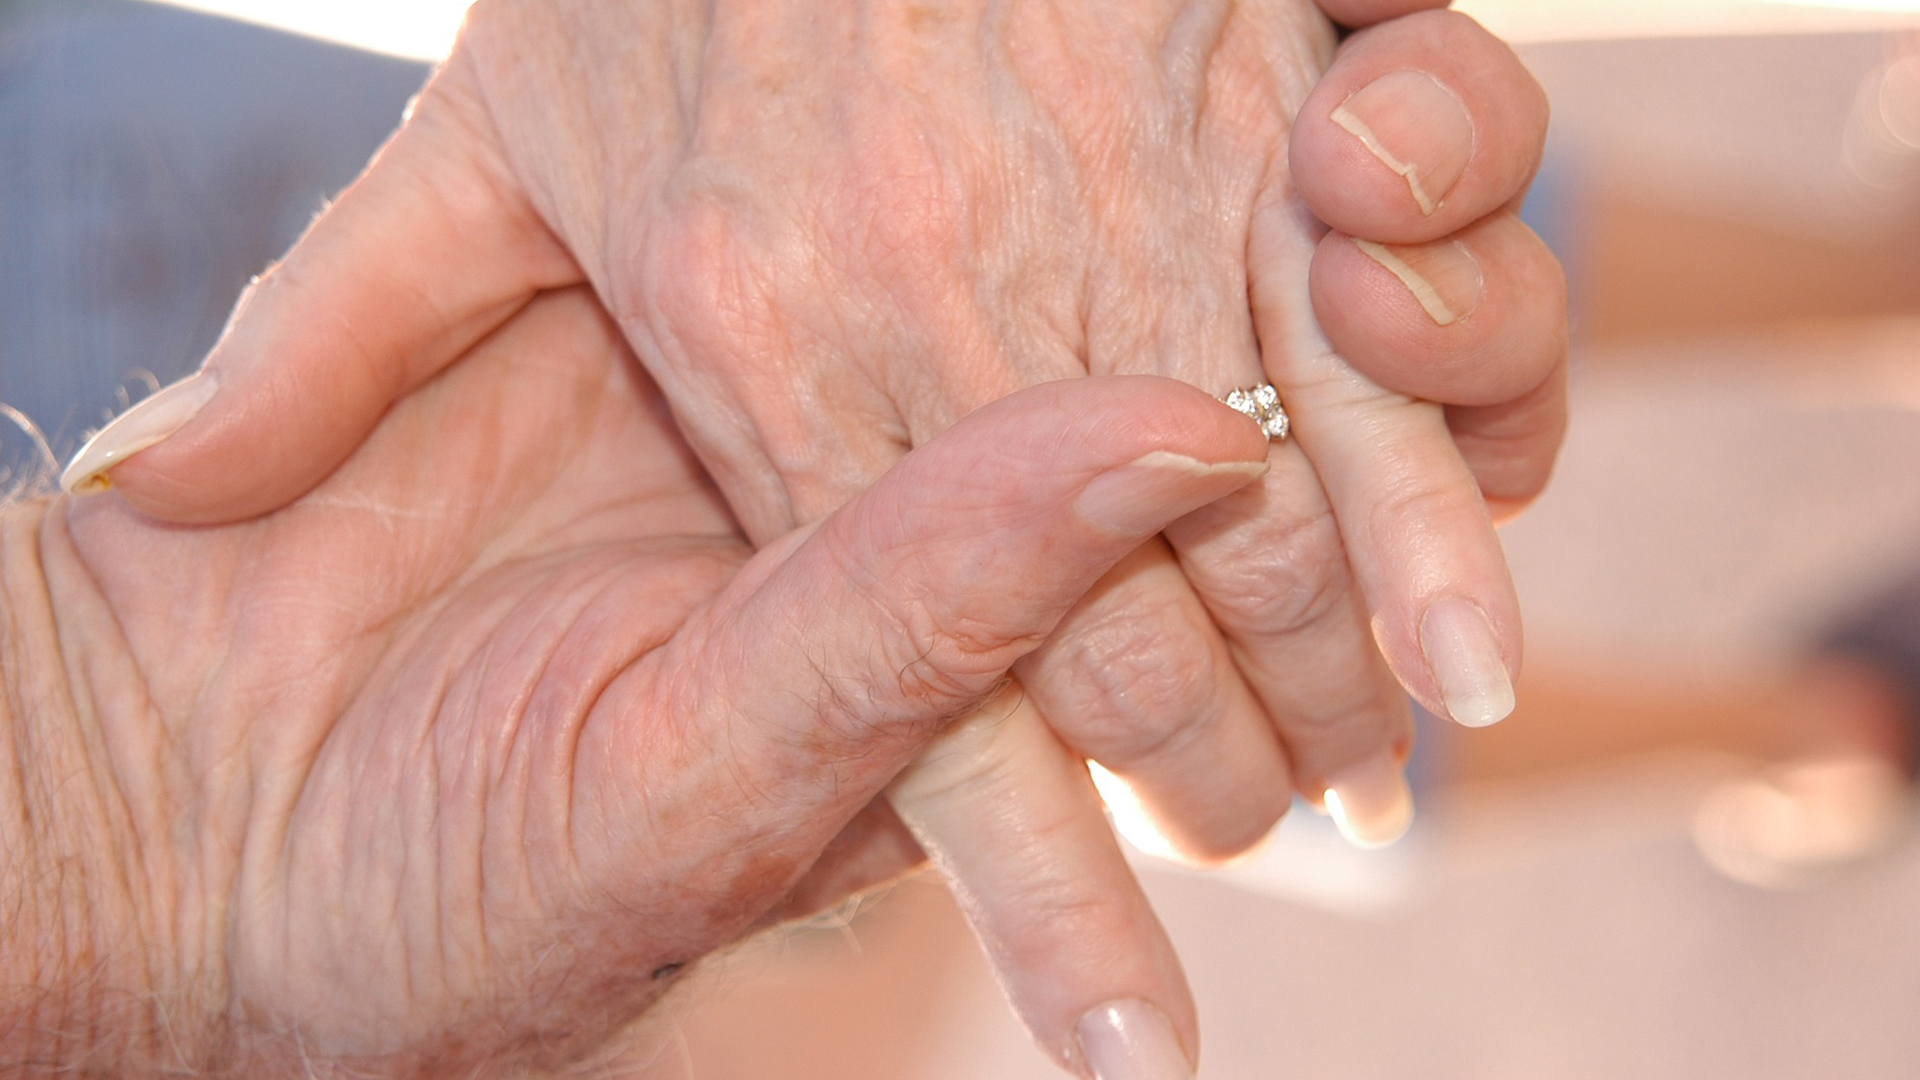 Två äldre personer håller varandra i handen - närbild på händerna